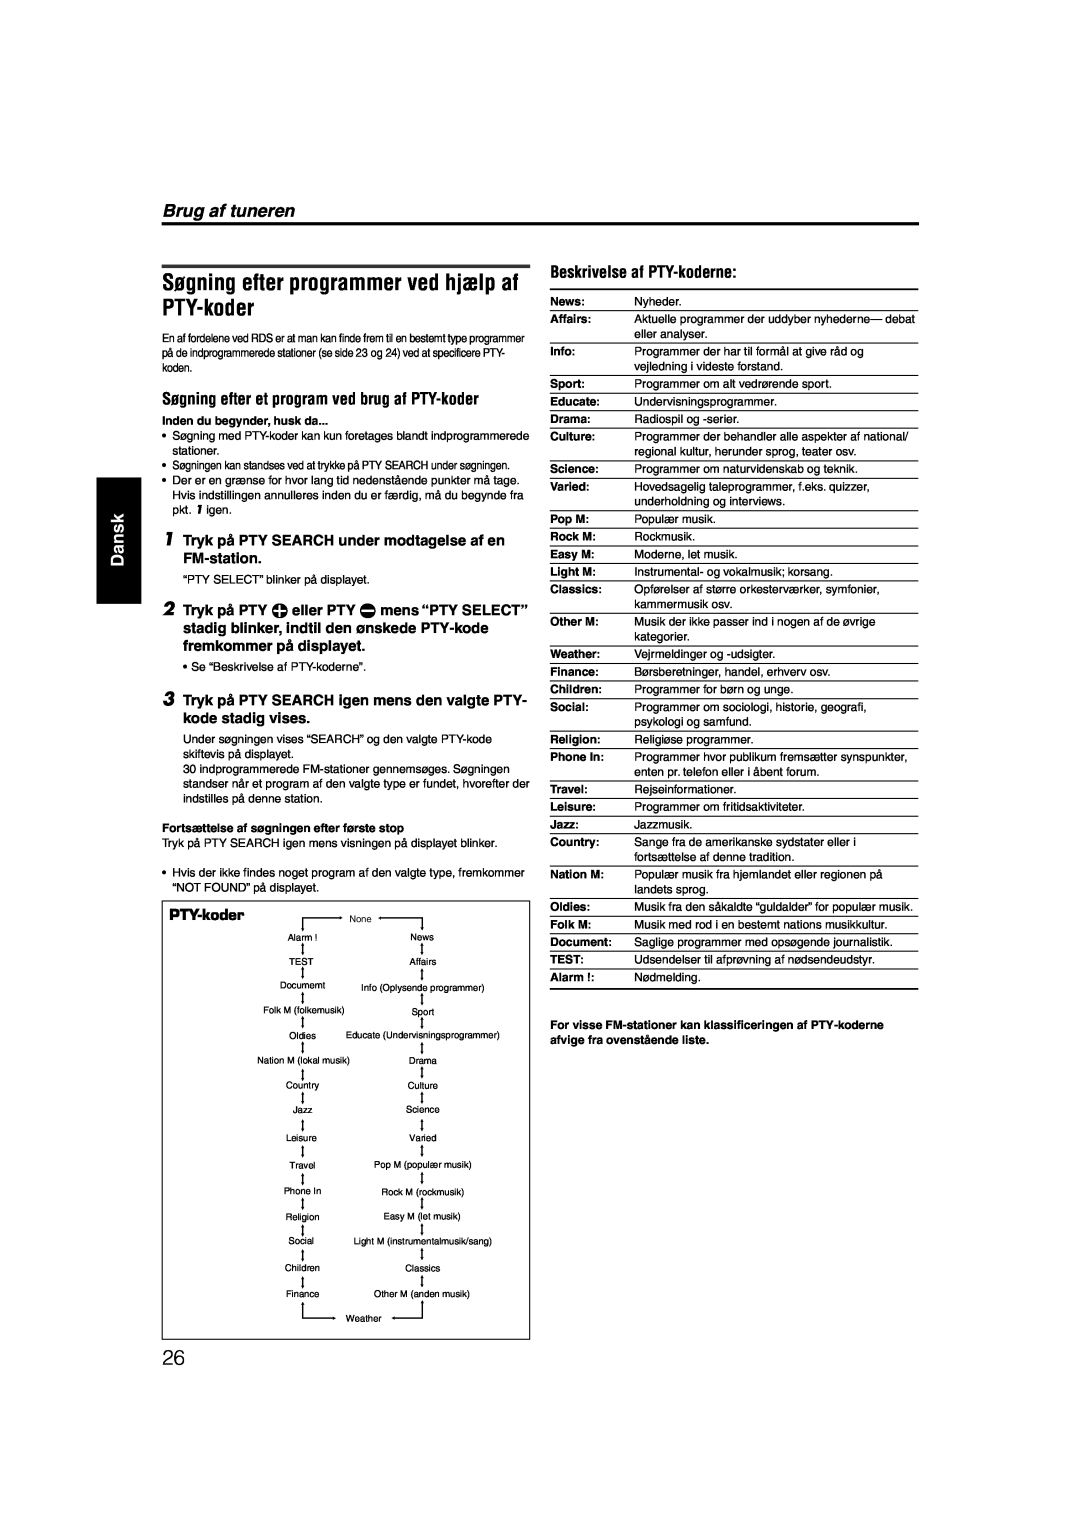 JVC RX-ES1SL manual Søgning efter programmer ved hjælp af PTY-koder, Brug af tuneren, Dansk, Beskrivelse af PTY-koderne 